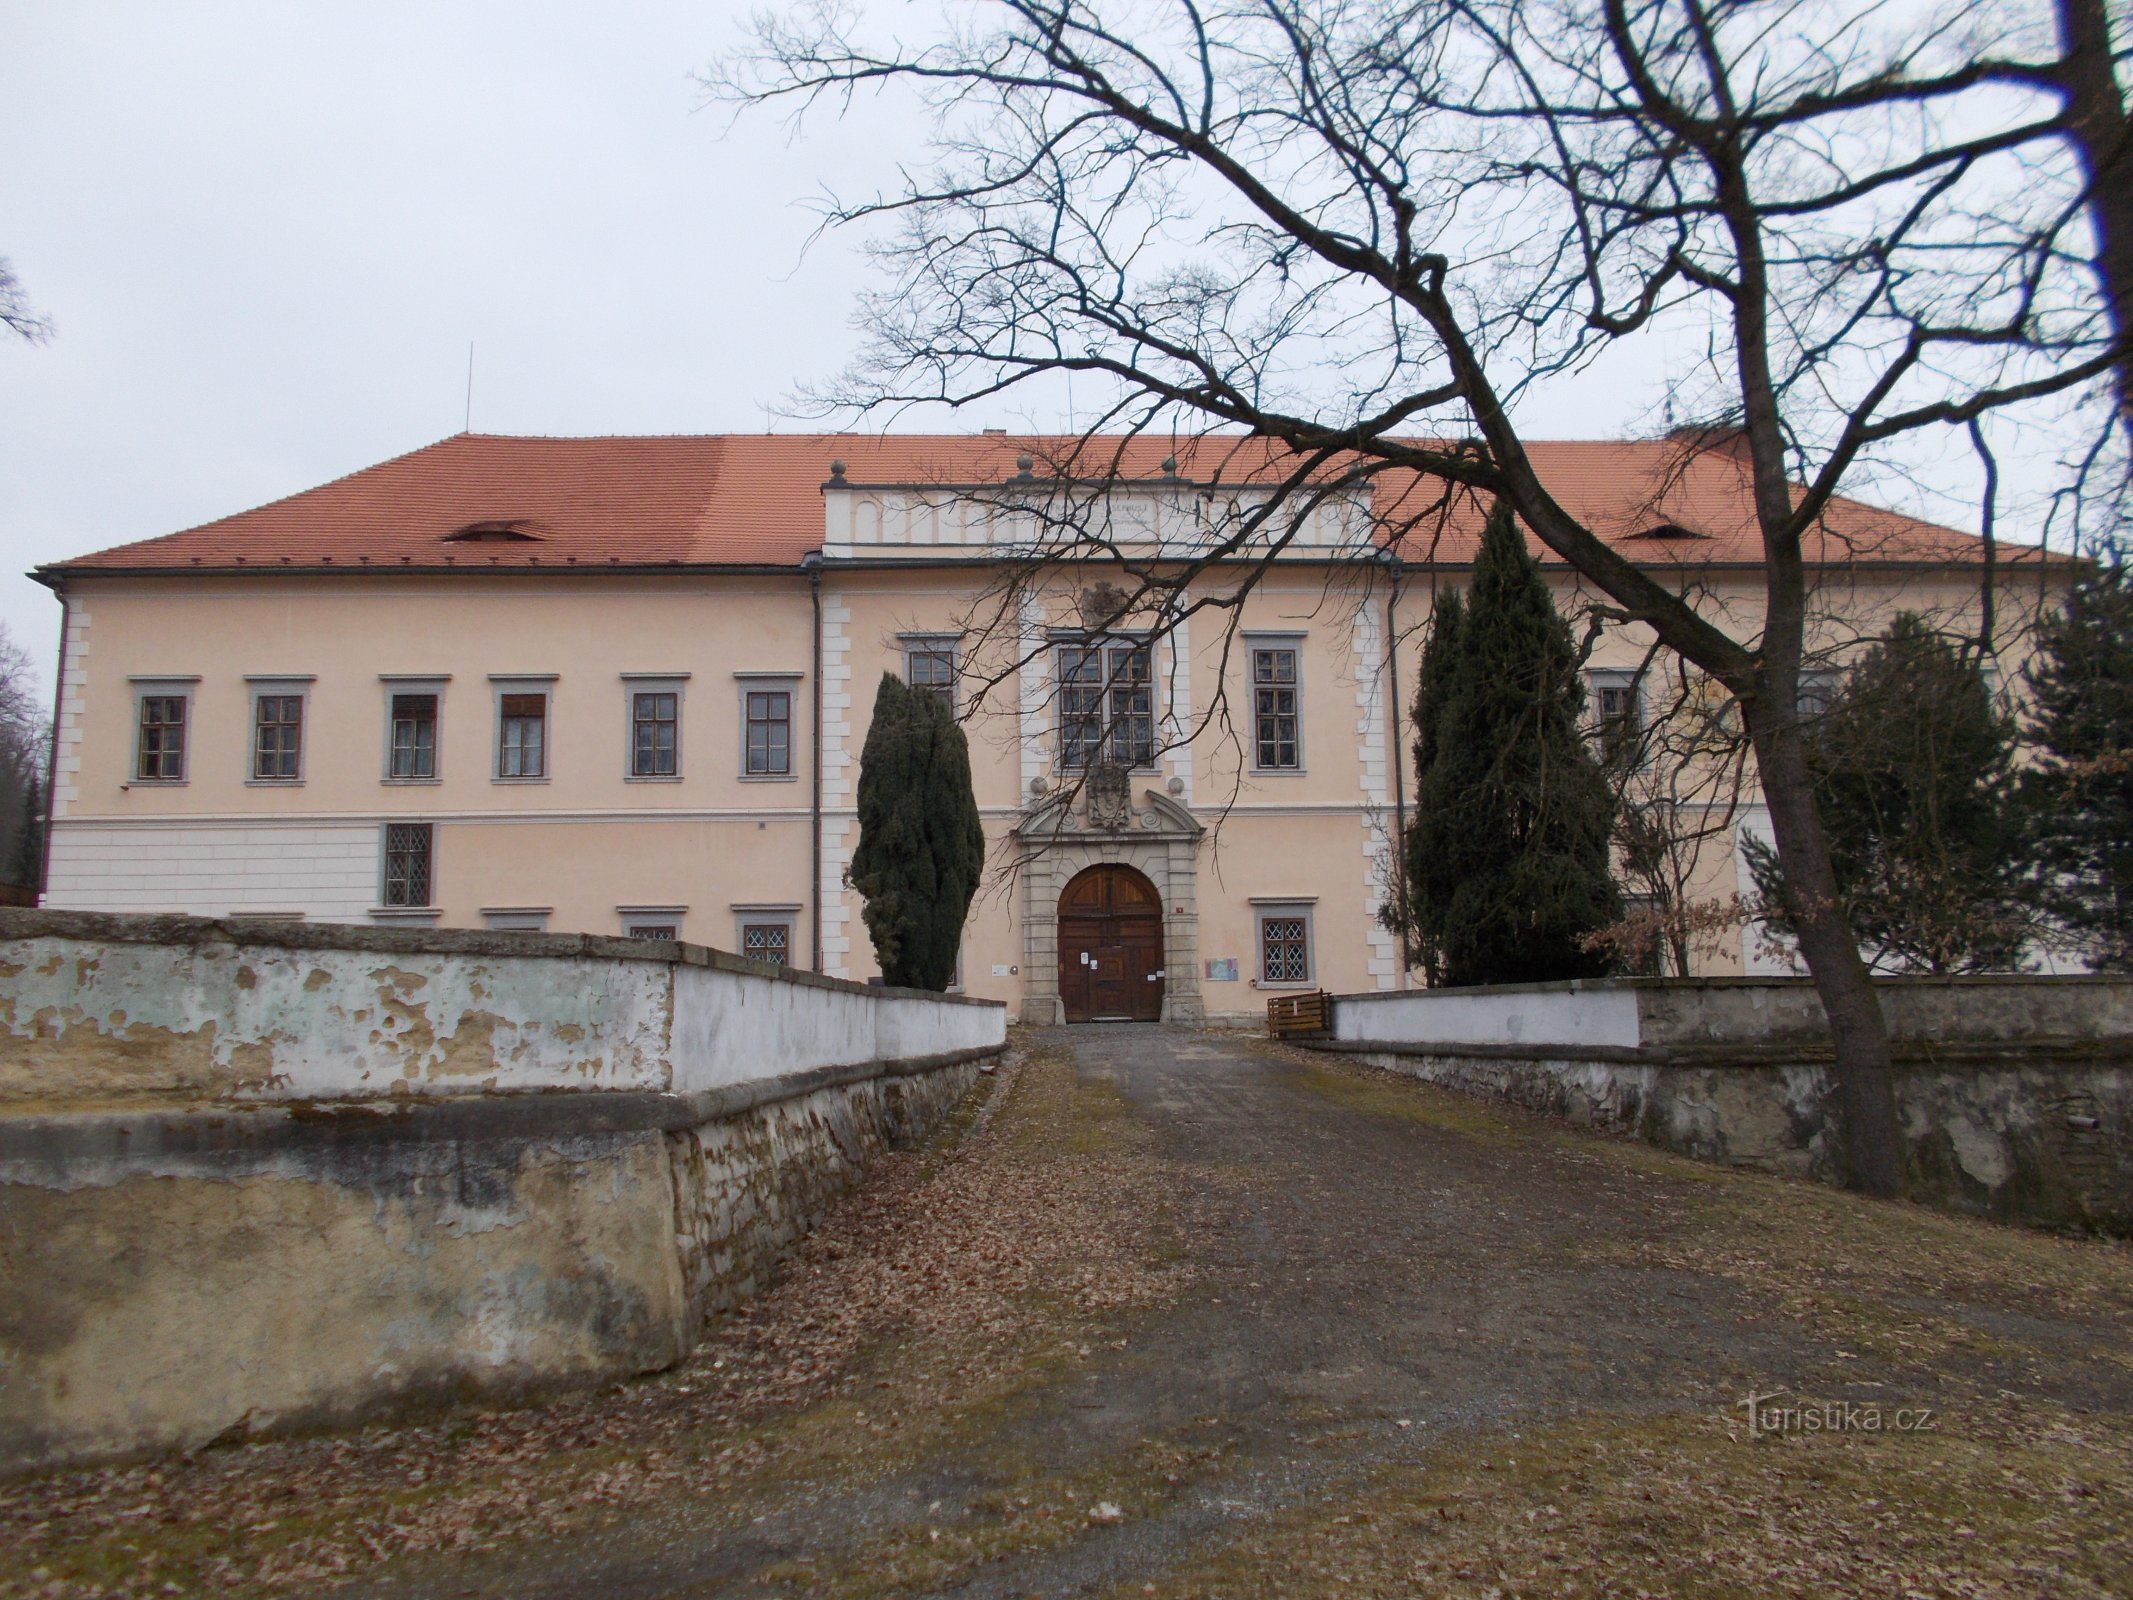 Κάστρο Štěkeň